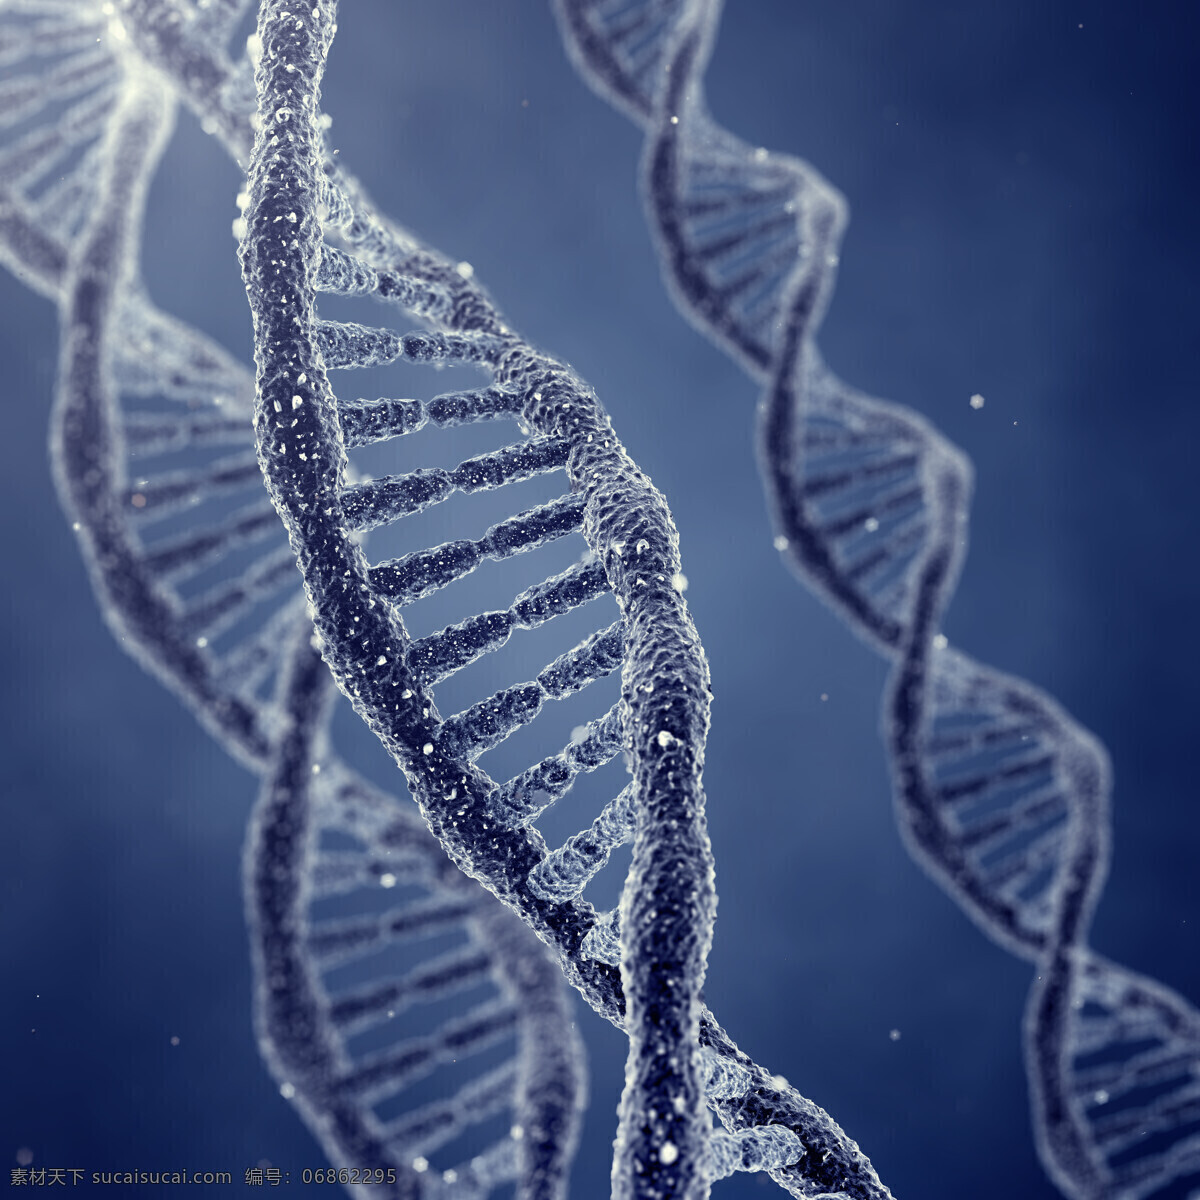 dna 多彩 分子 基因 交叉 科技 科学 科学研究 遗传基因 dna基因 核糖核酸 扭曲 波形 曲线 现代科技 矢量图